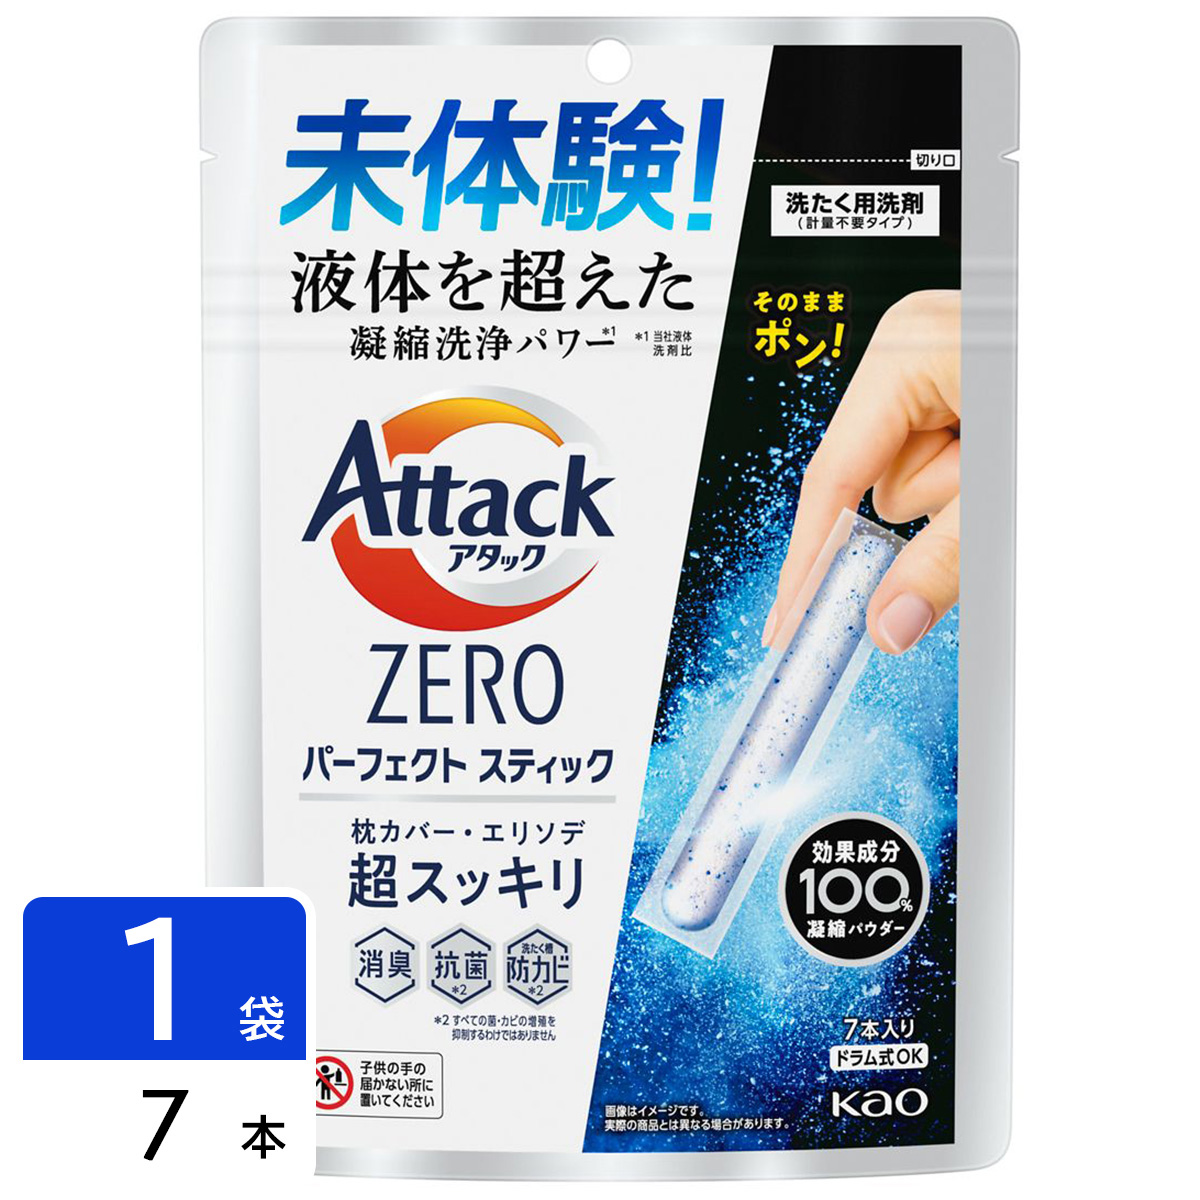 アタックZERO Attack ZERO 洗濯洗剤 パーフェクトスティック 7本入り